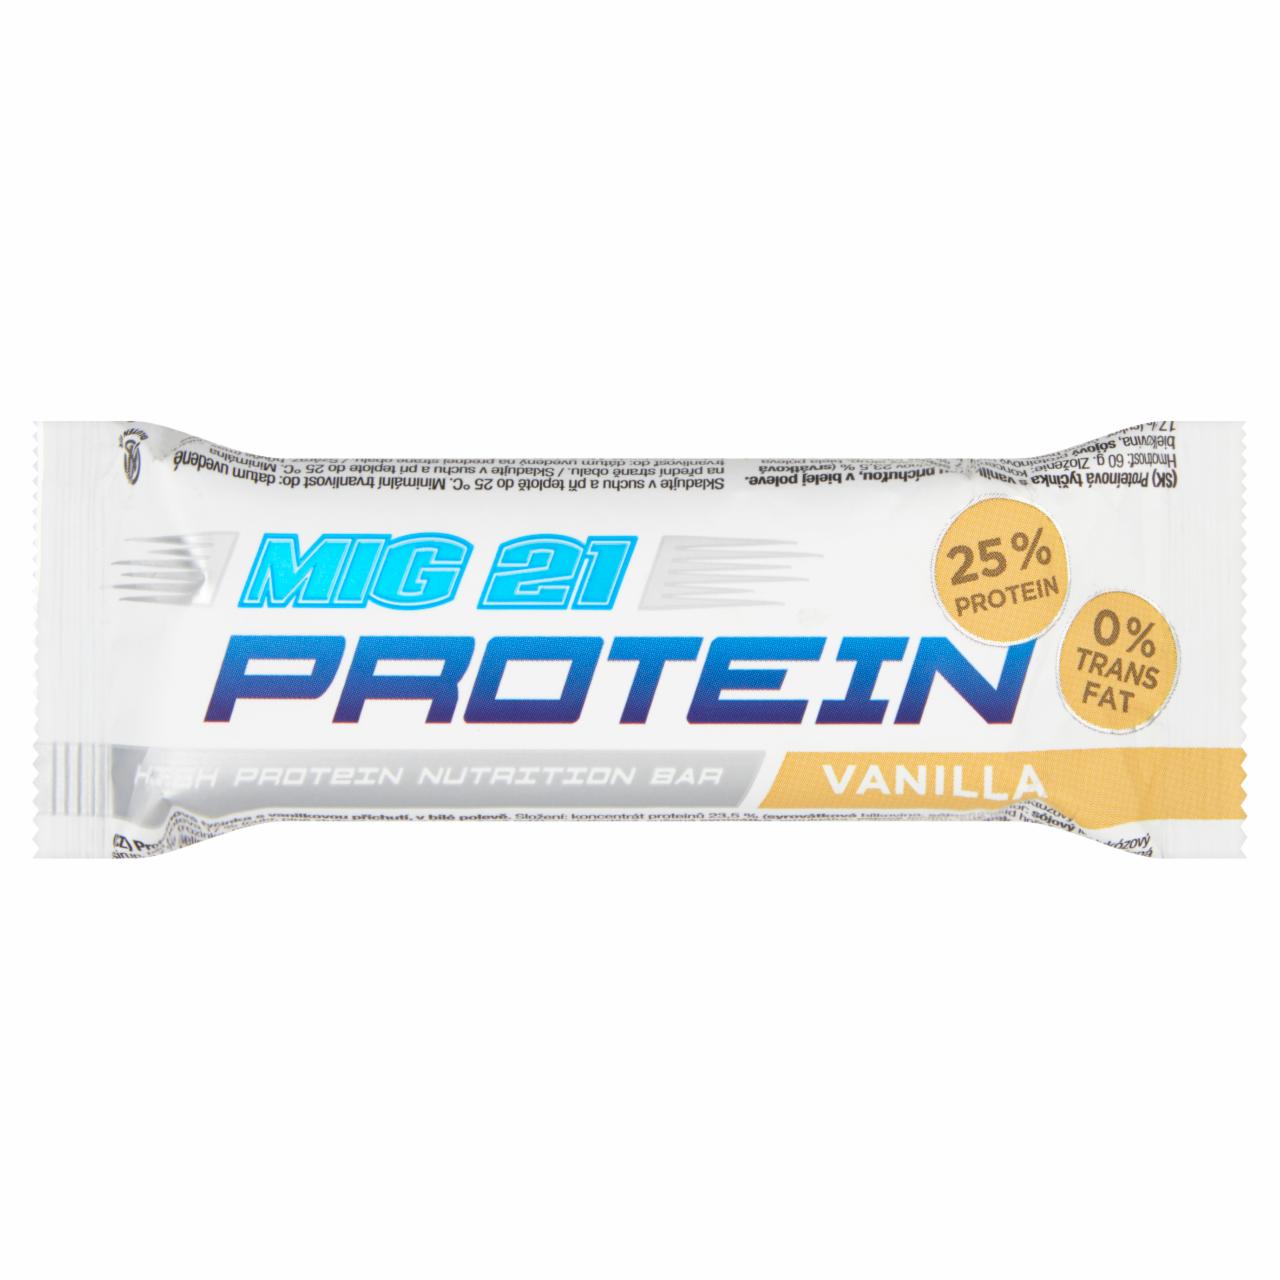 Képek - MIG 21 Protein vaníliás-mazsolás rúd tejbevonatban vitaminokkal, kalciummal, magnéziummal 60 g